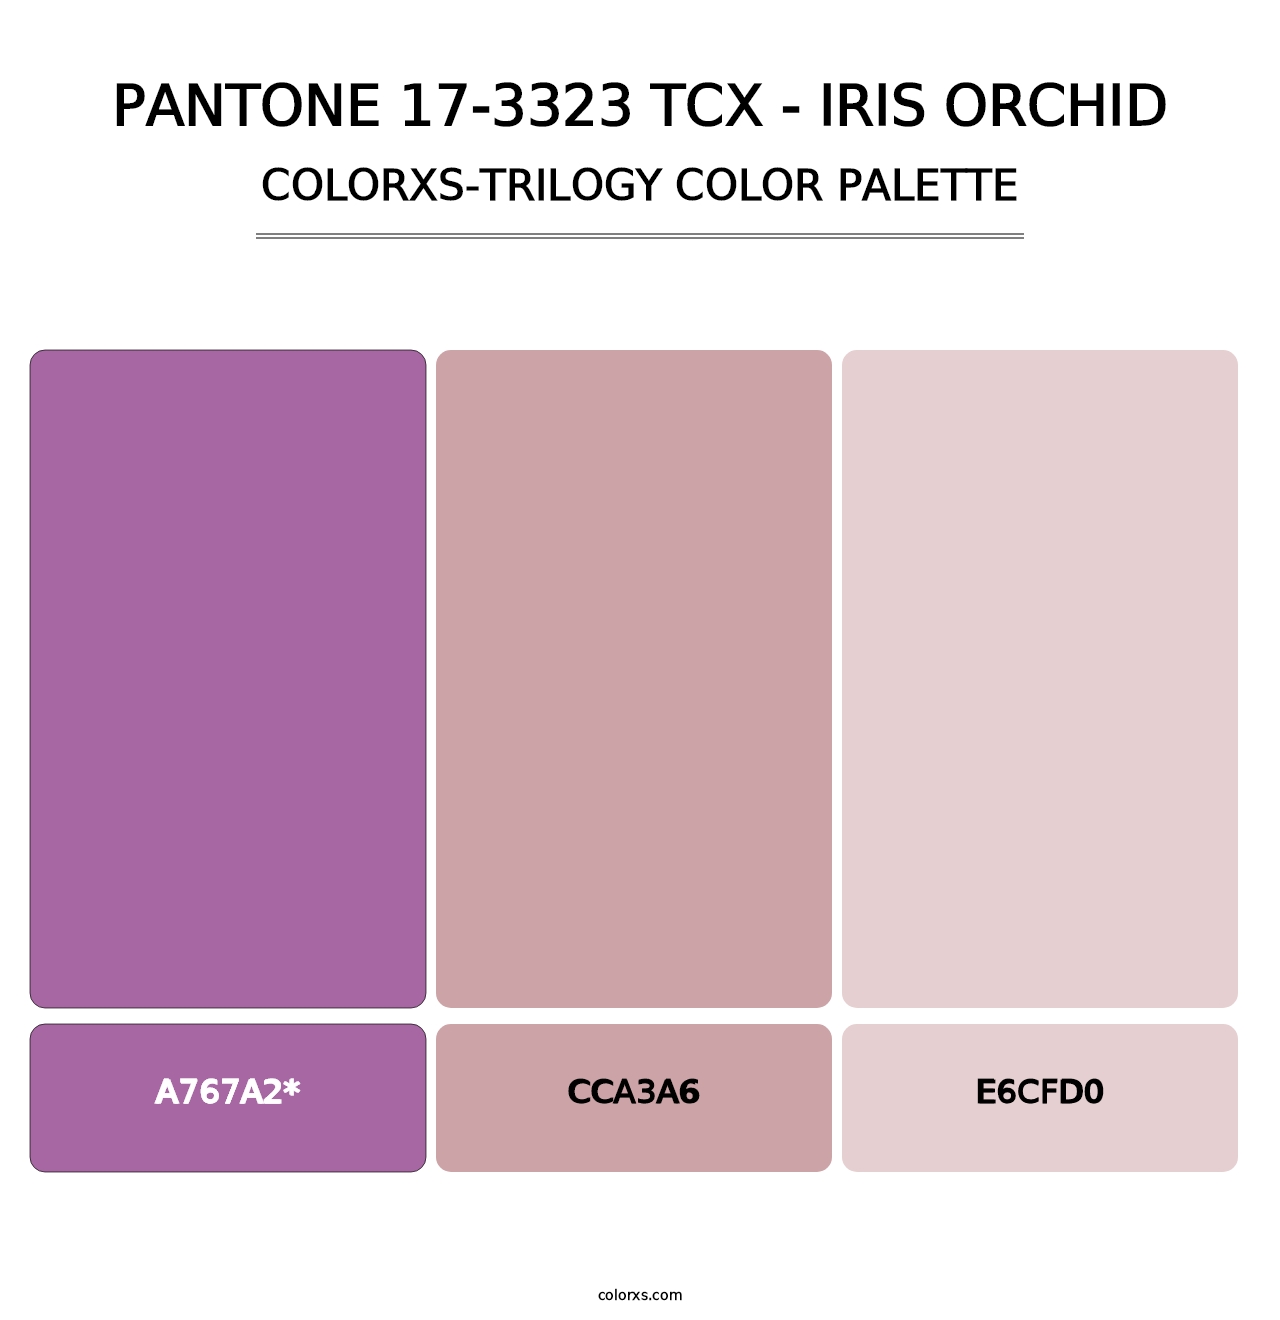 PANTONE 17-3323 TCX - Iris Orchid - Colorxs Trilogy Palette